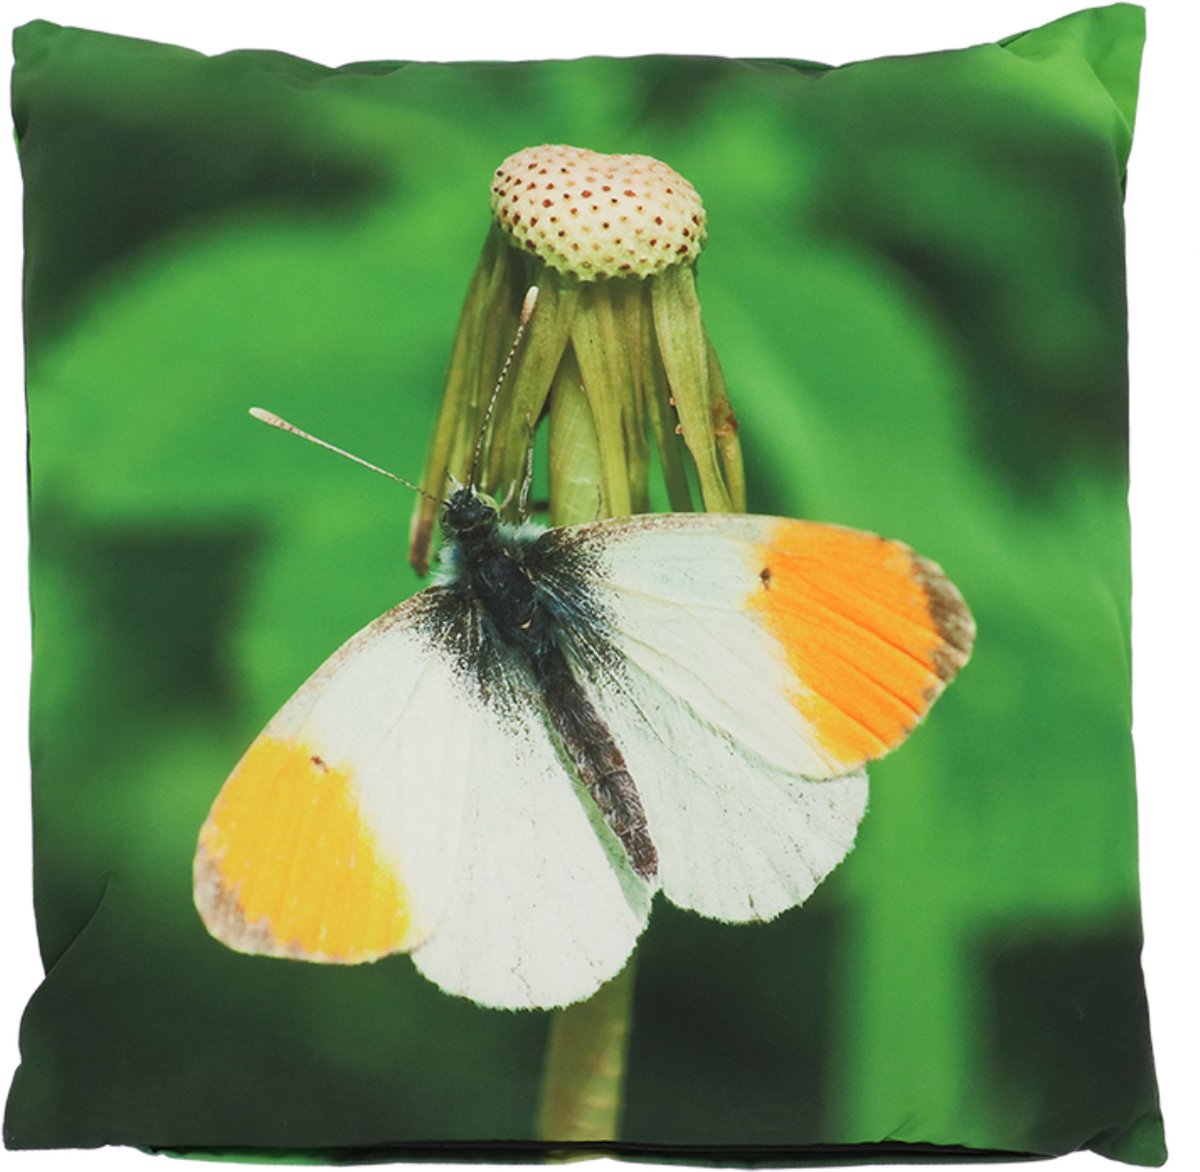 Buitenkussen vlinder oranjetipje L 50 cm x 50 cm - tuinkussen - buitenkussen - outdoorkussen - waterafstotend - vlinderprint - cadeau - geschenk - Nieuwjaar - Kerst - verjaardag